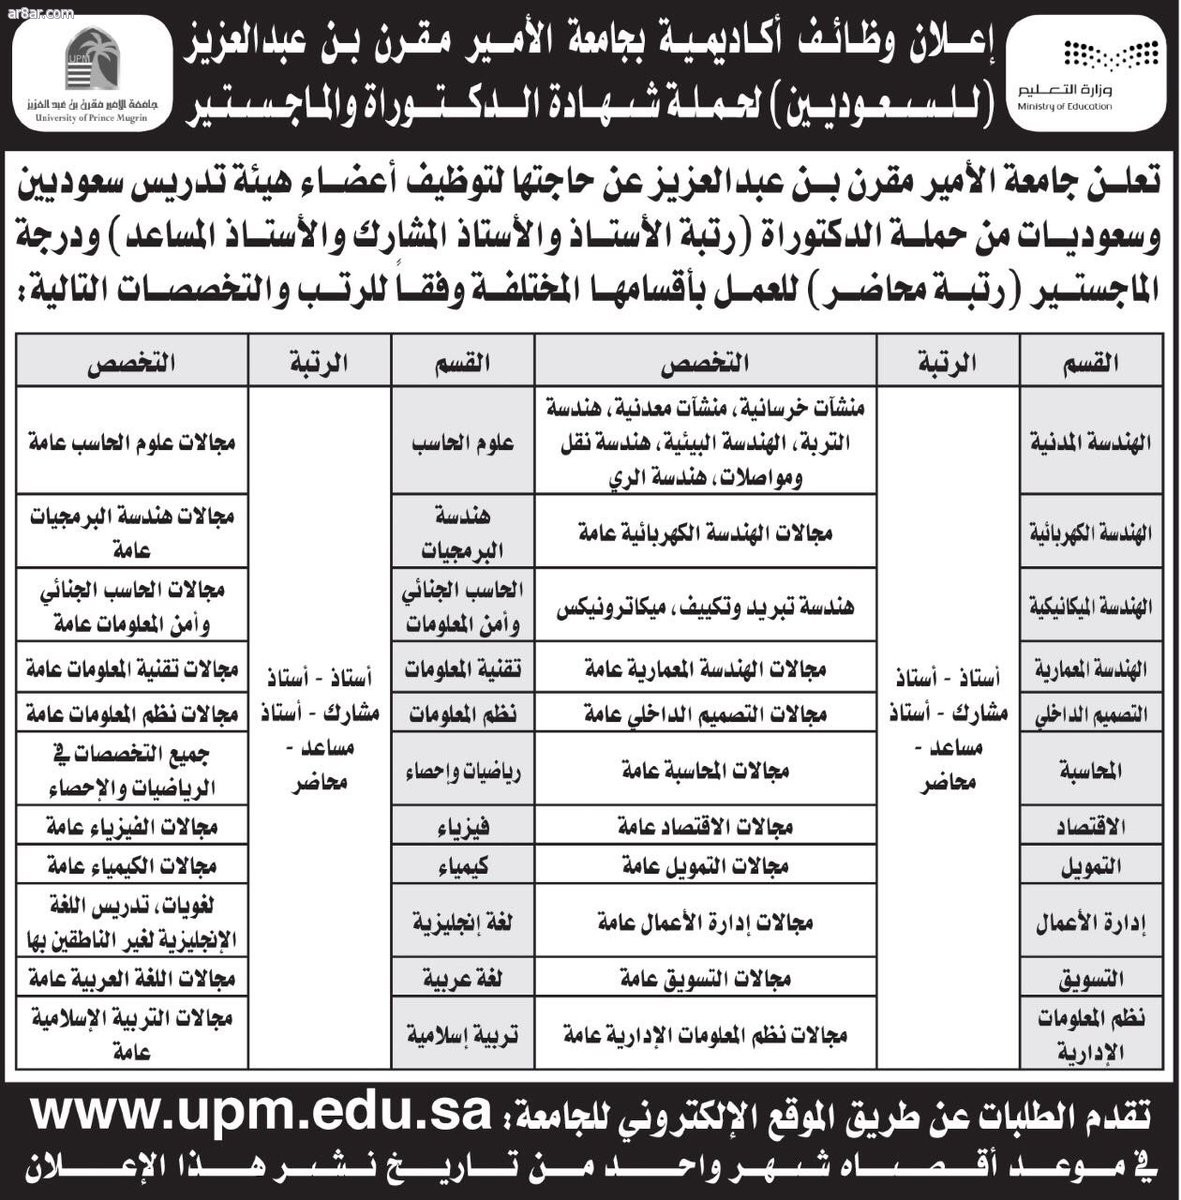 جامعة الامير مقرن وظائف اكاديمية في عدد من التخصصات